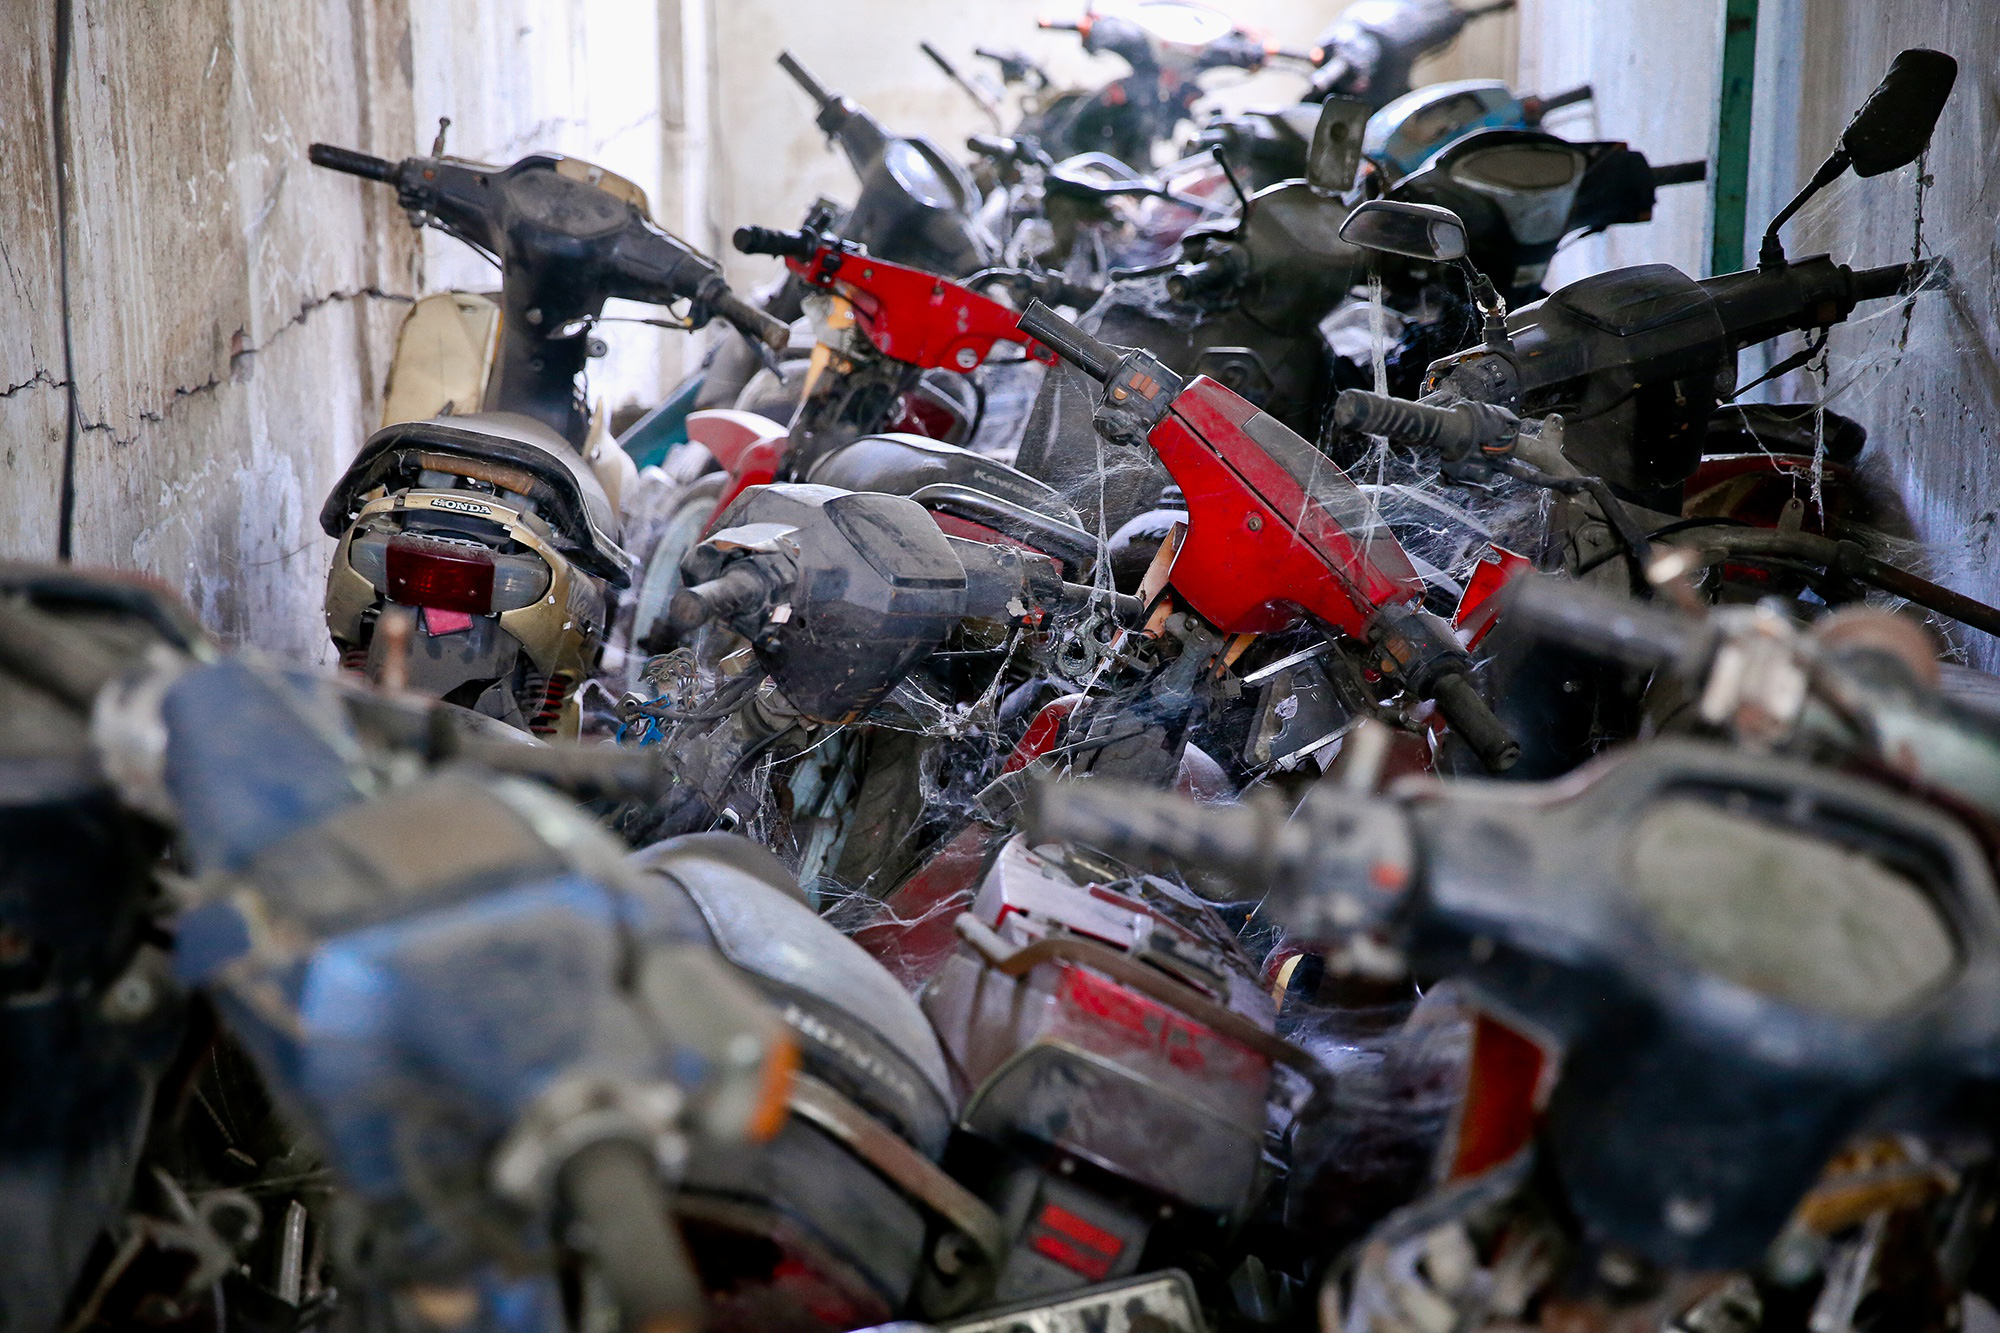 ẢNH: Hàng trăm xe máy vô chủ chất đống tại hai bến xe ở TP.HCM - Ảnh 3.